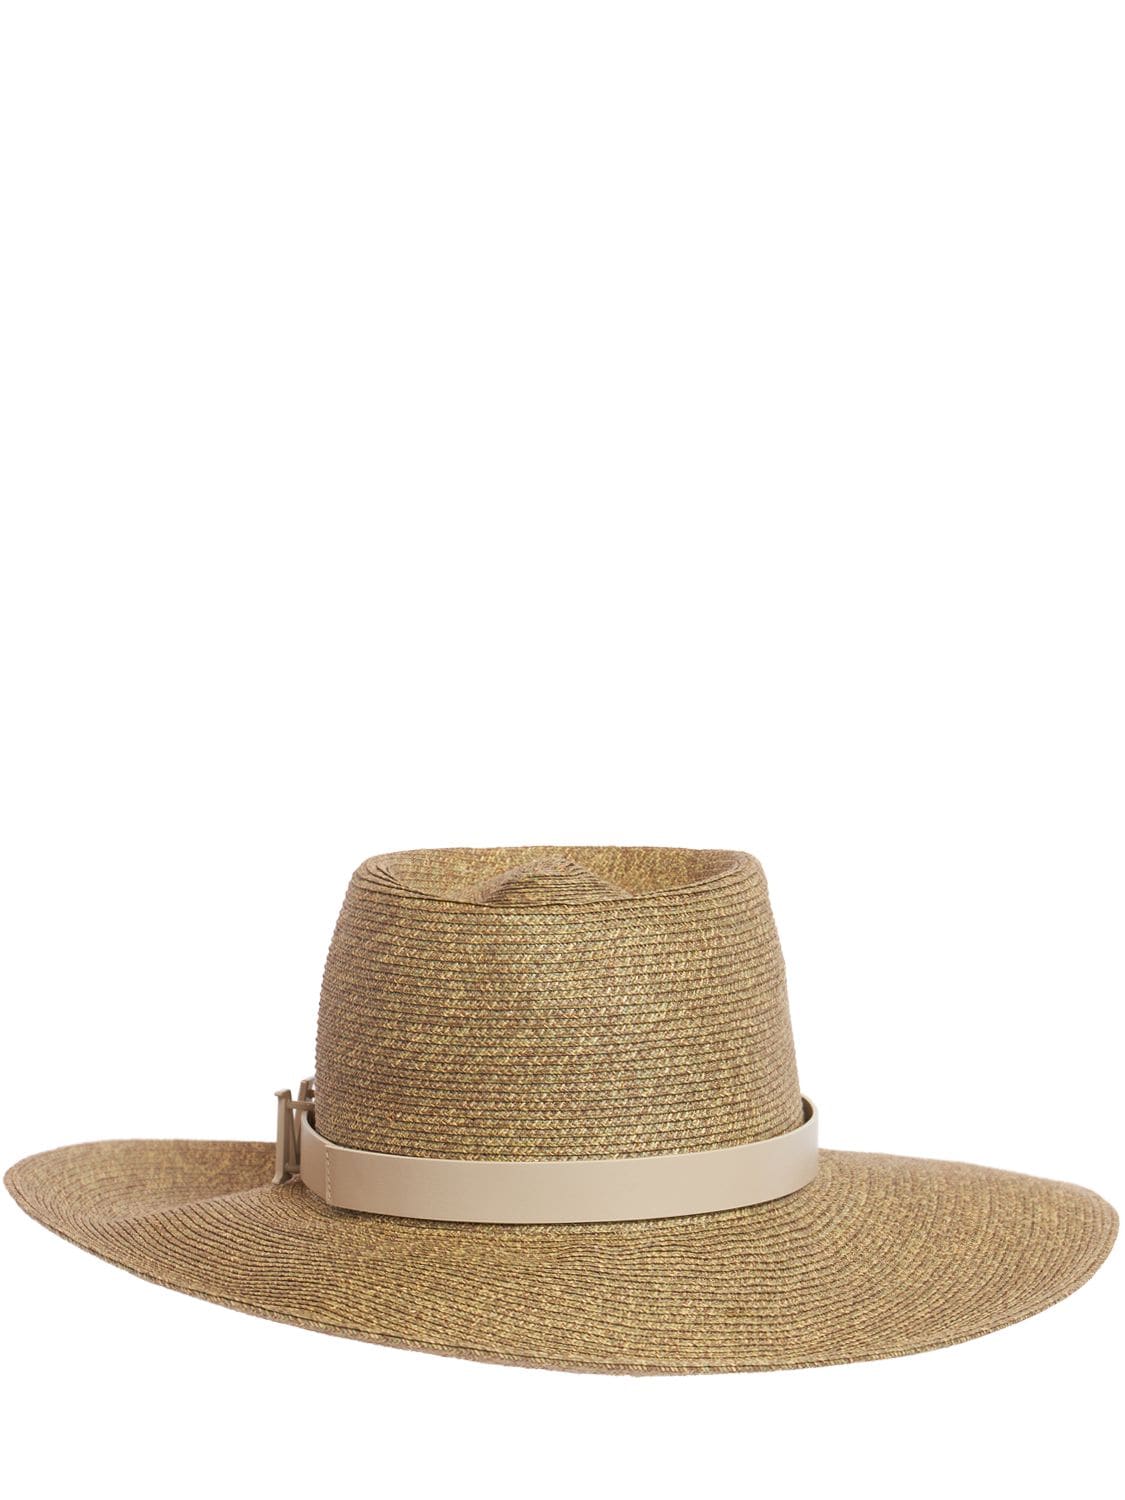 Max Mara Musette Straw Brimmed Hat In Khaki Chiaro